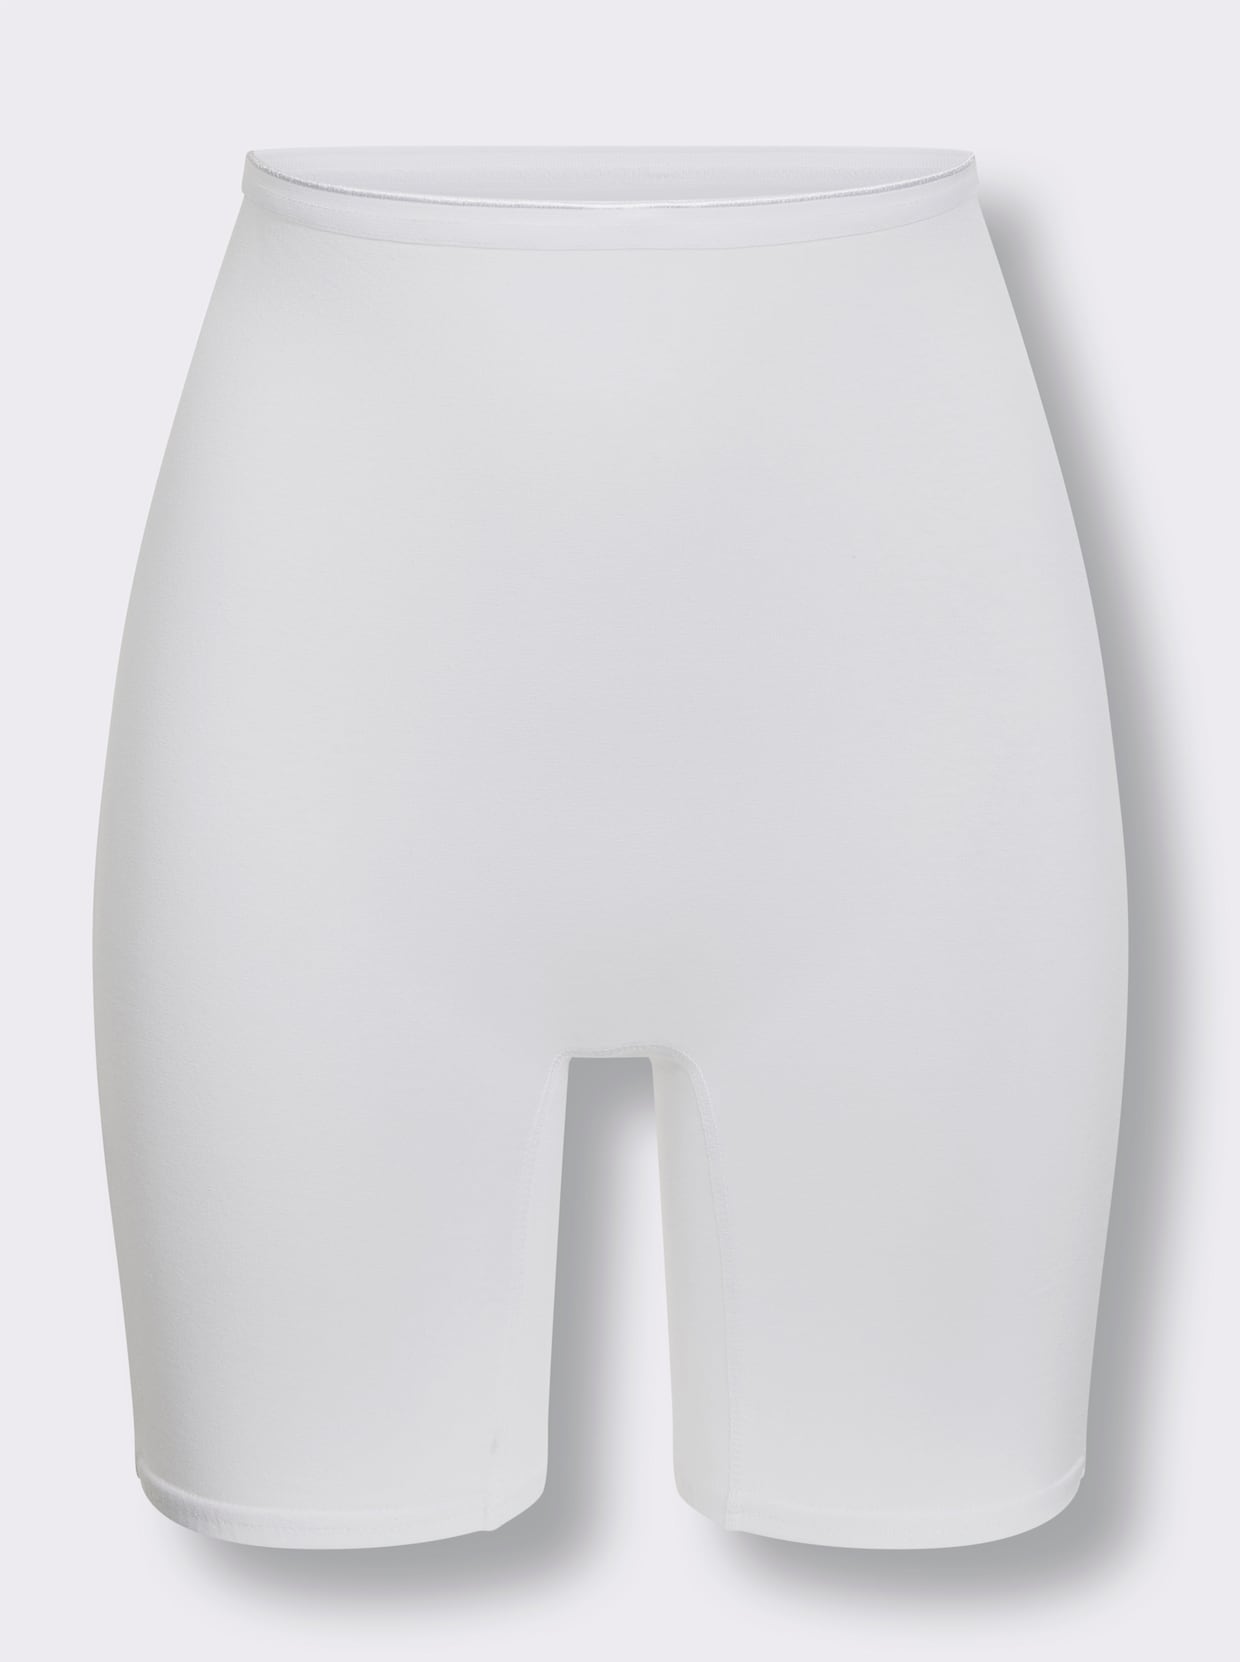 wäschepur Longpanty - 2x hellgrau-geringelt + 2x weiß